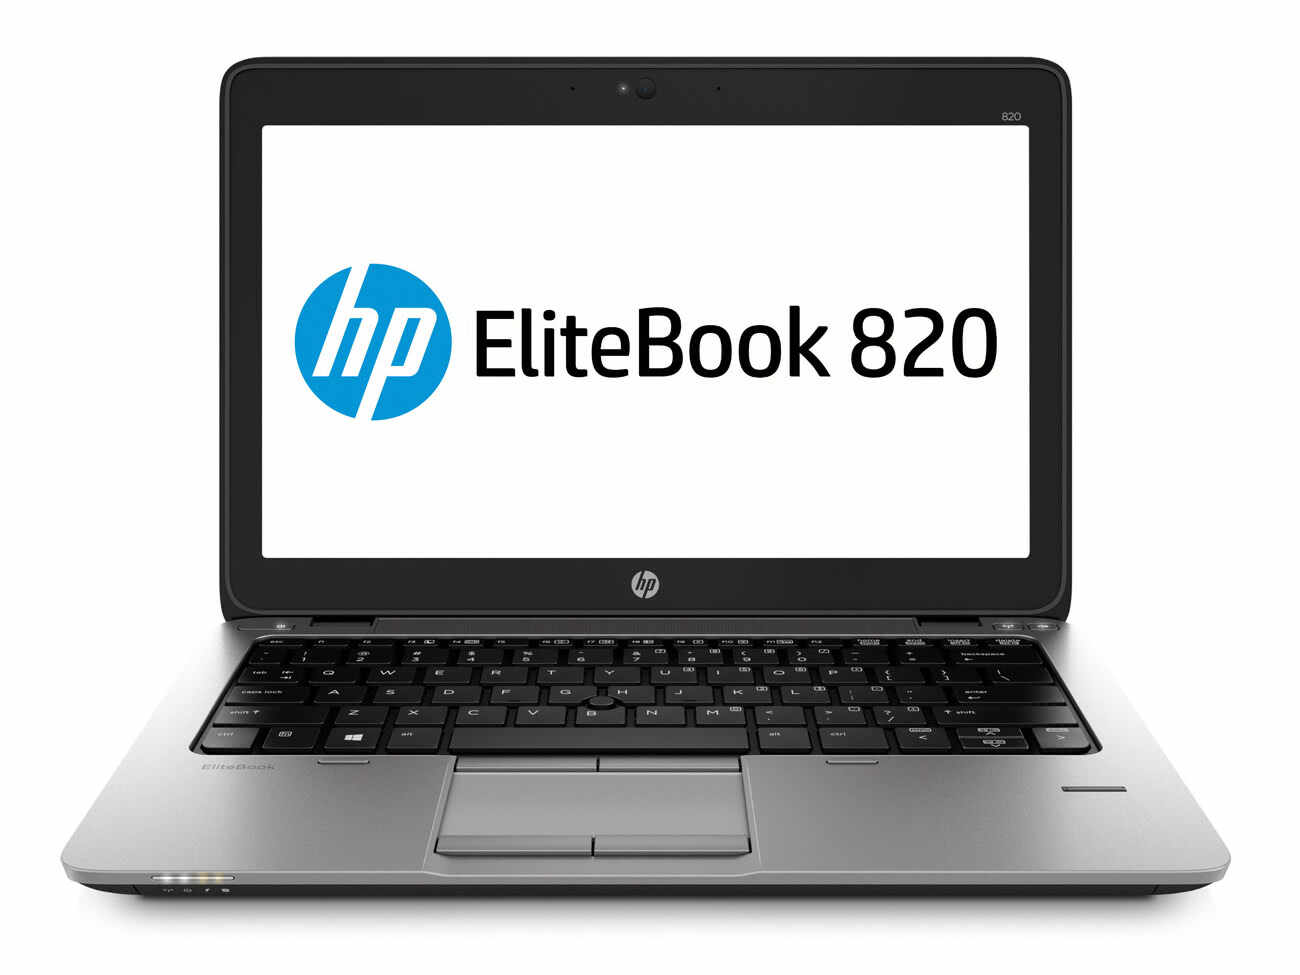 Laptop HP Elitebook 820 G2, Intel Core i5-5300U 2.30GHz, 4GB DDR3, 500GB SATA, 12.5 Inch, Webcam